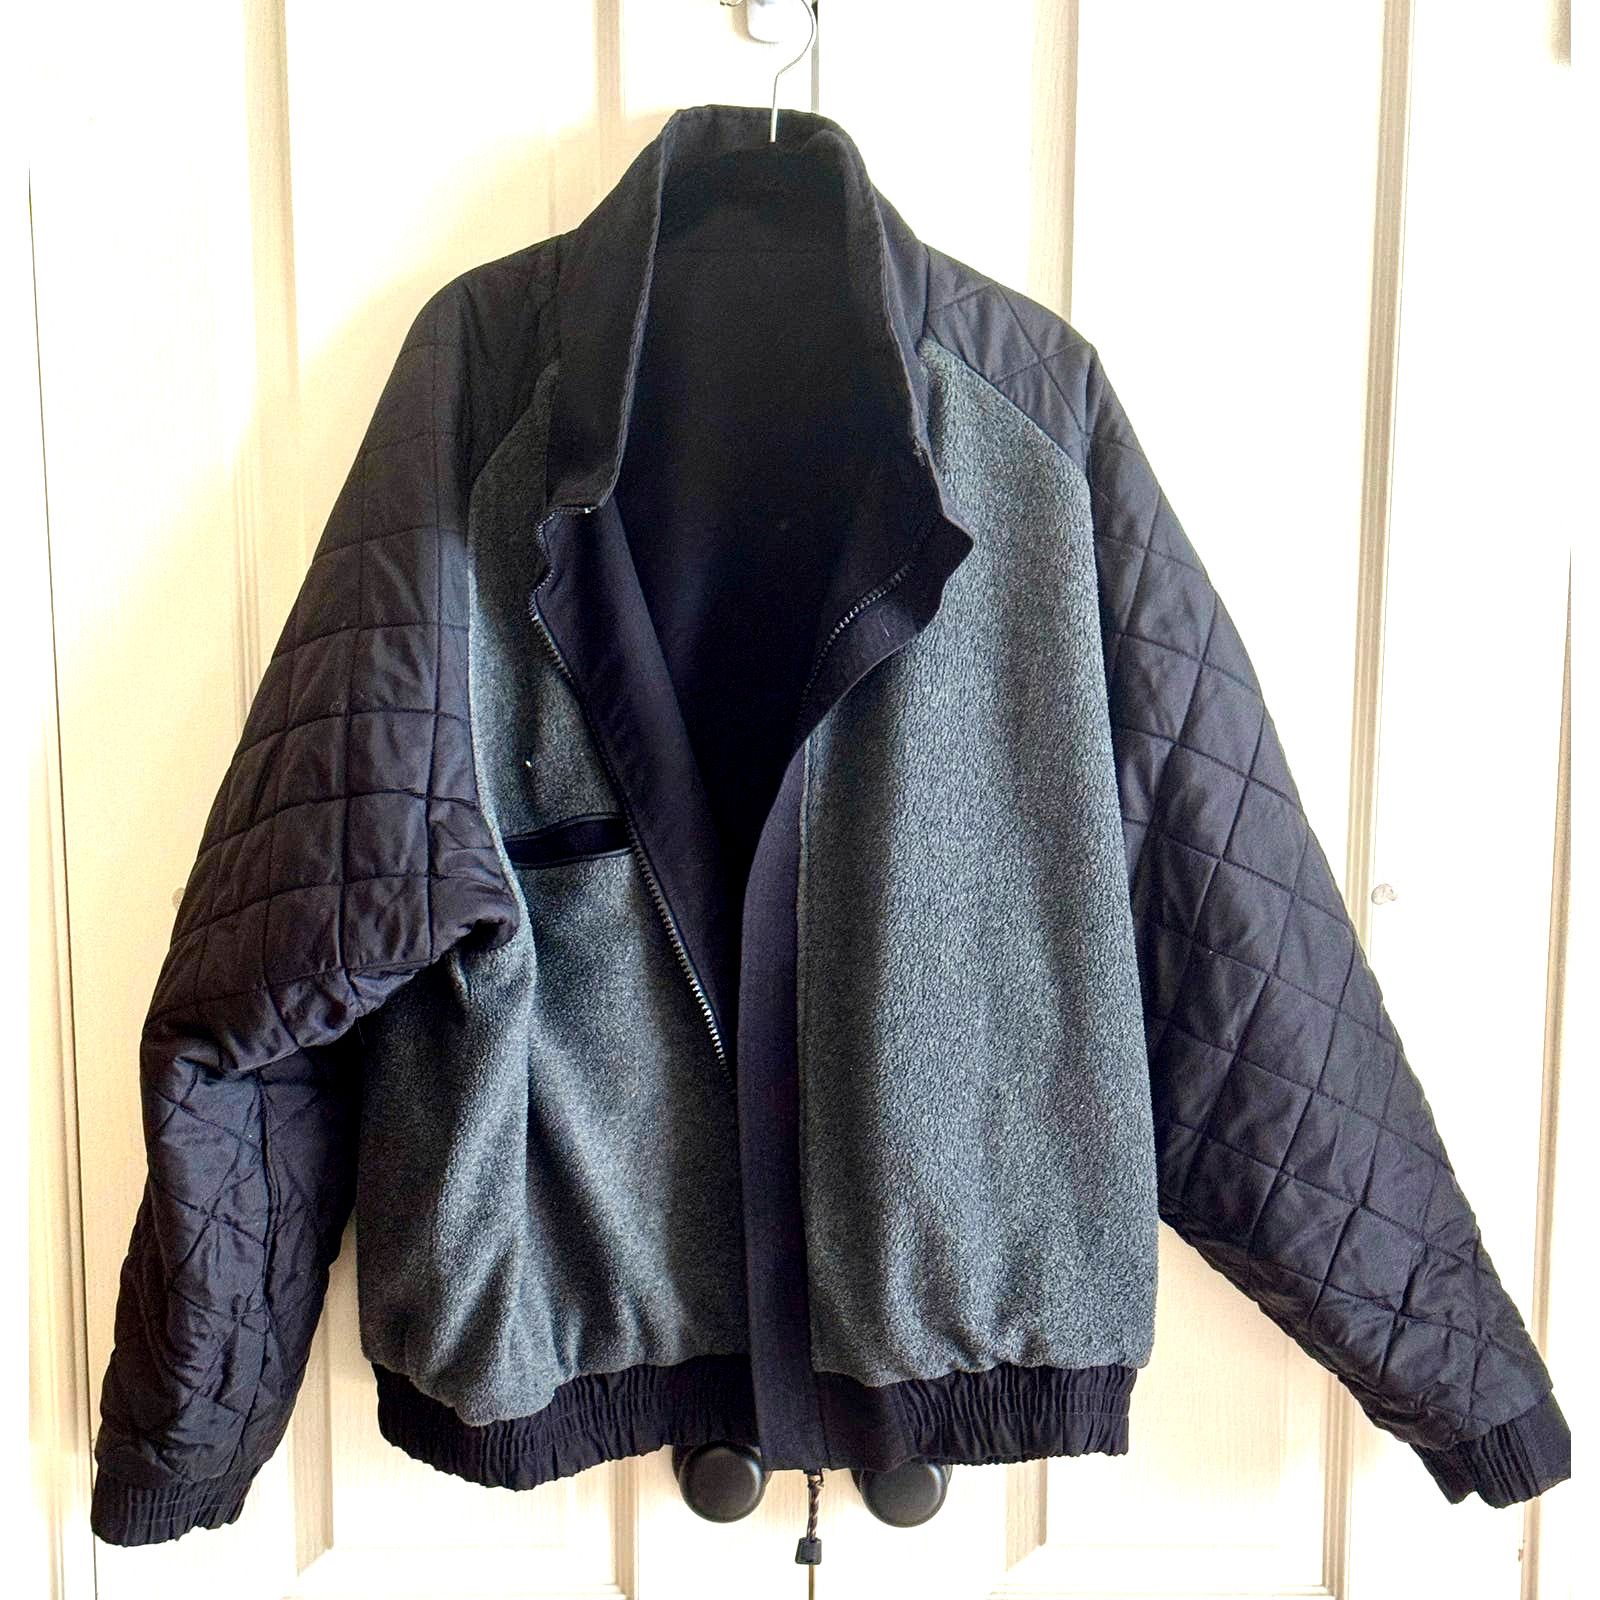 Carhartt Vintage Carhartt Workshield Jacket Fleece Lined Black J72 Size US XL / EU 56 / 4 - 11 Thumbnail